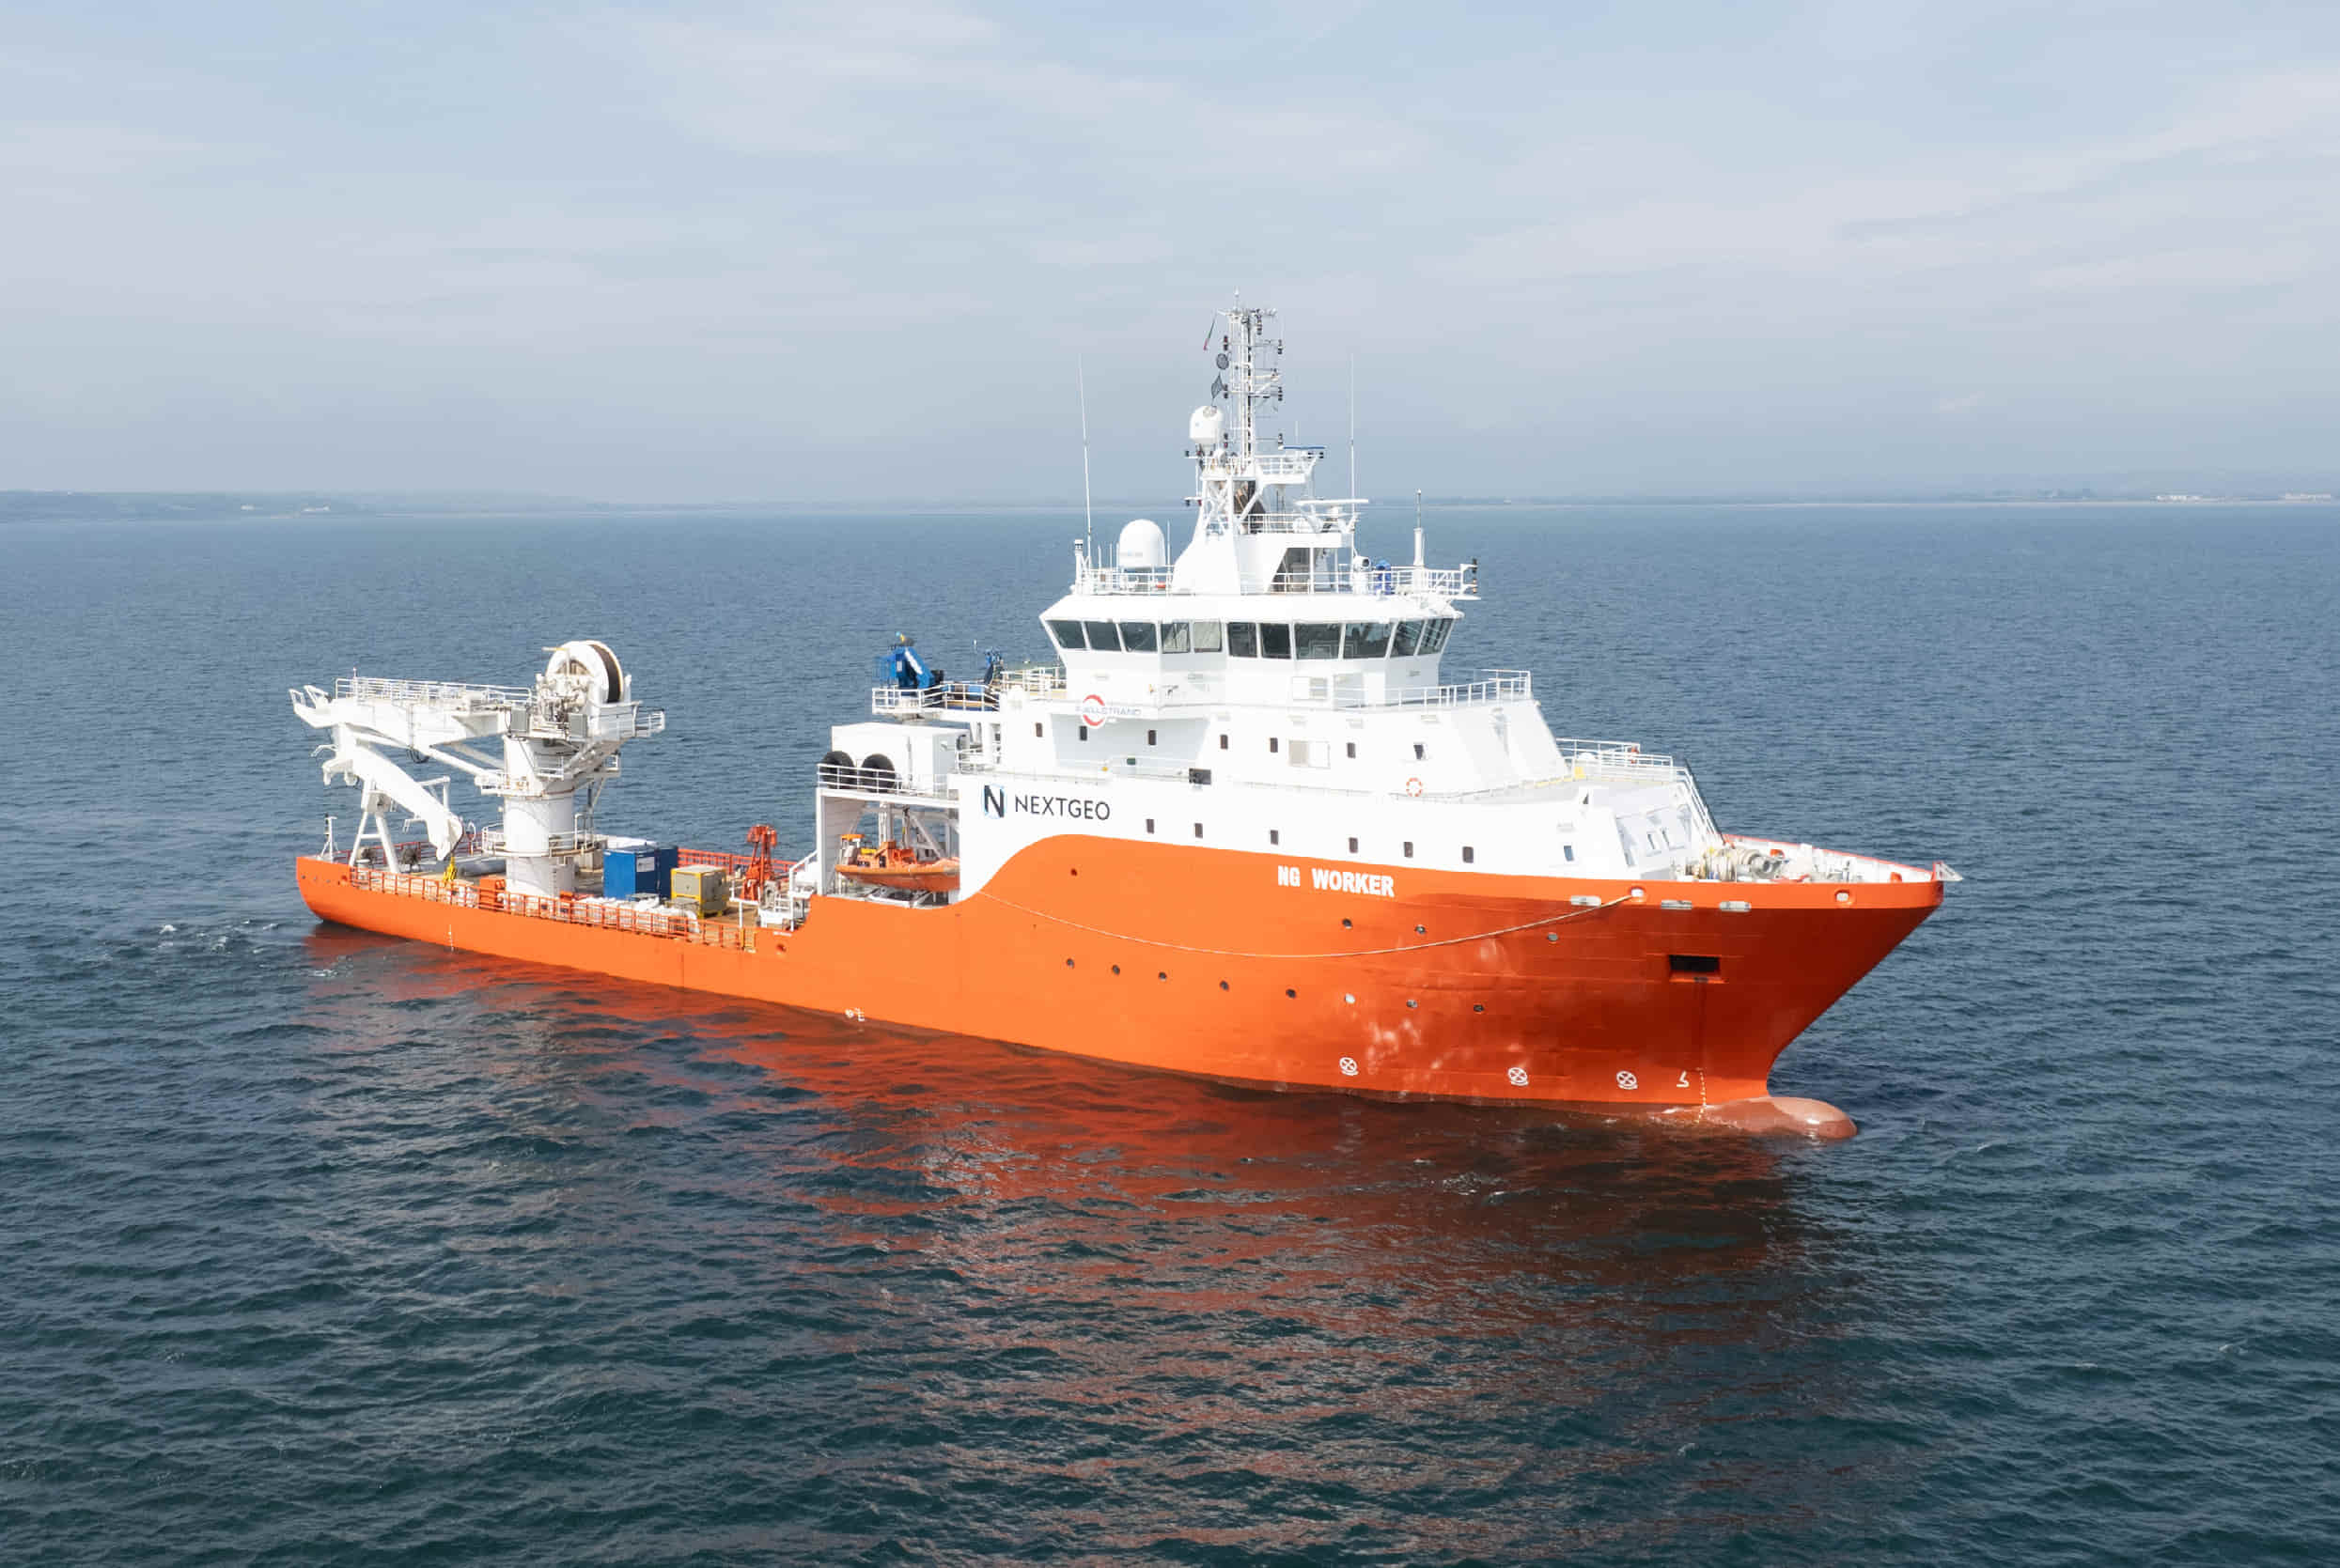 NG Worker marine survey vessel; Source: EirGrid/RTE